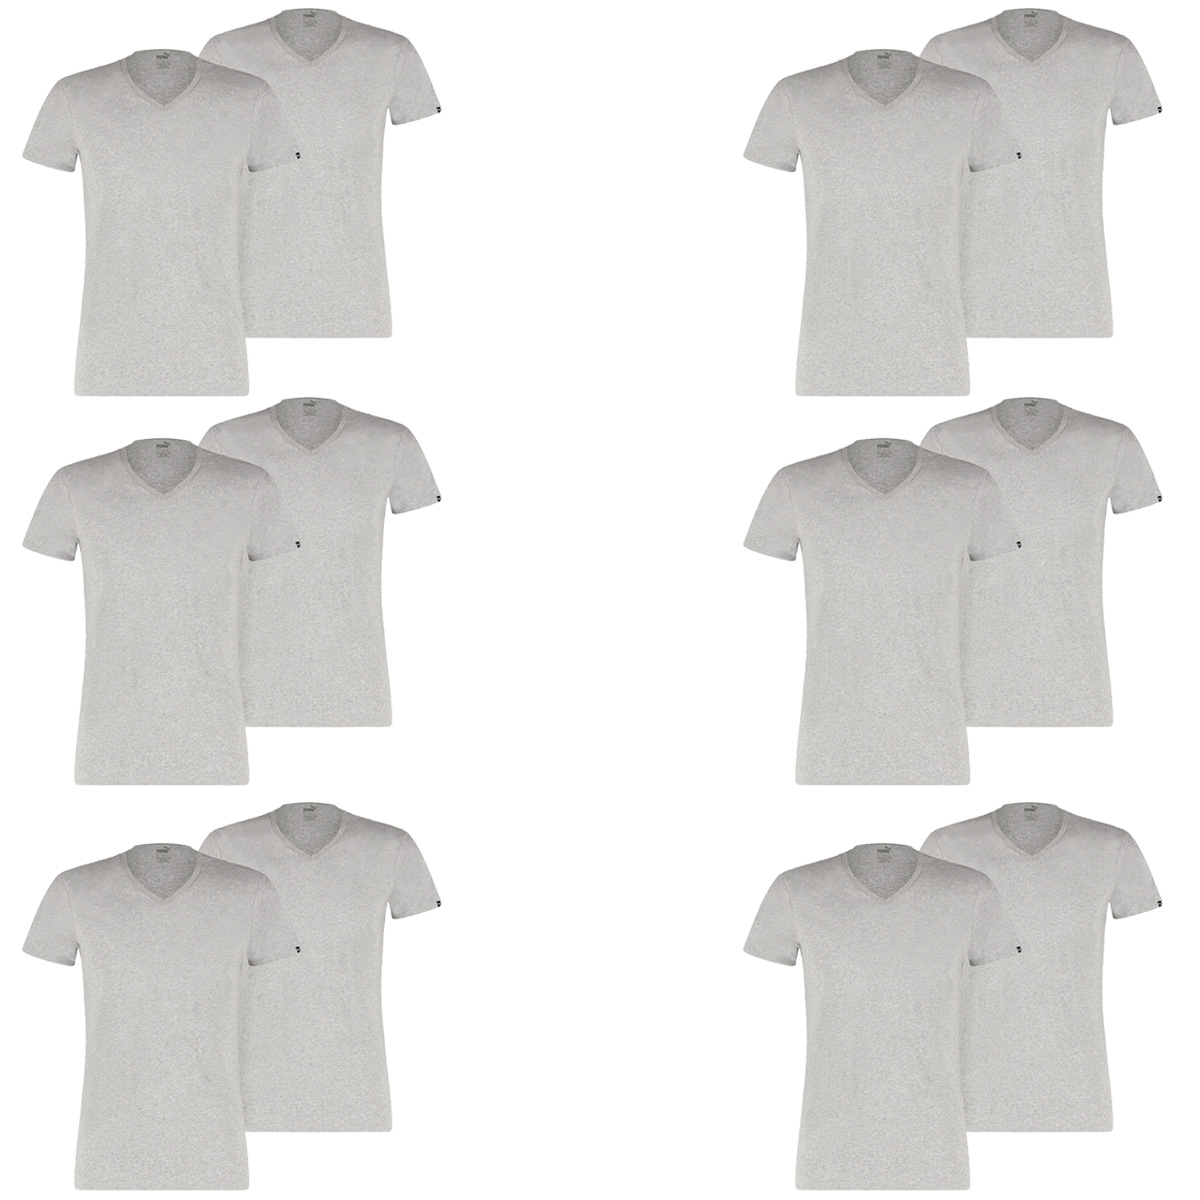 12 er Pack Puma Basic V Neck T-Shirt Men Herren Unterhemd V-Ausschnitt